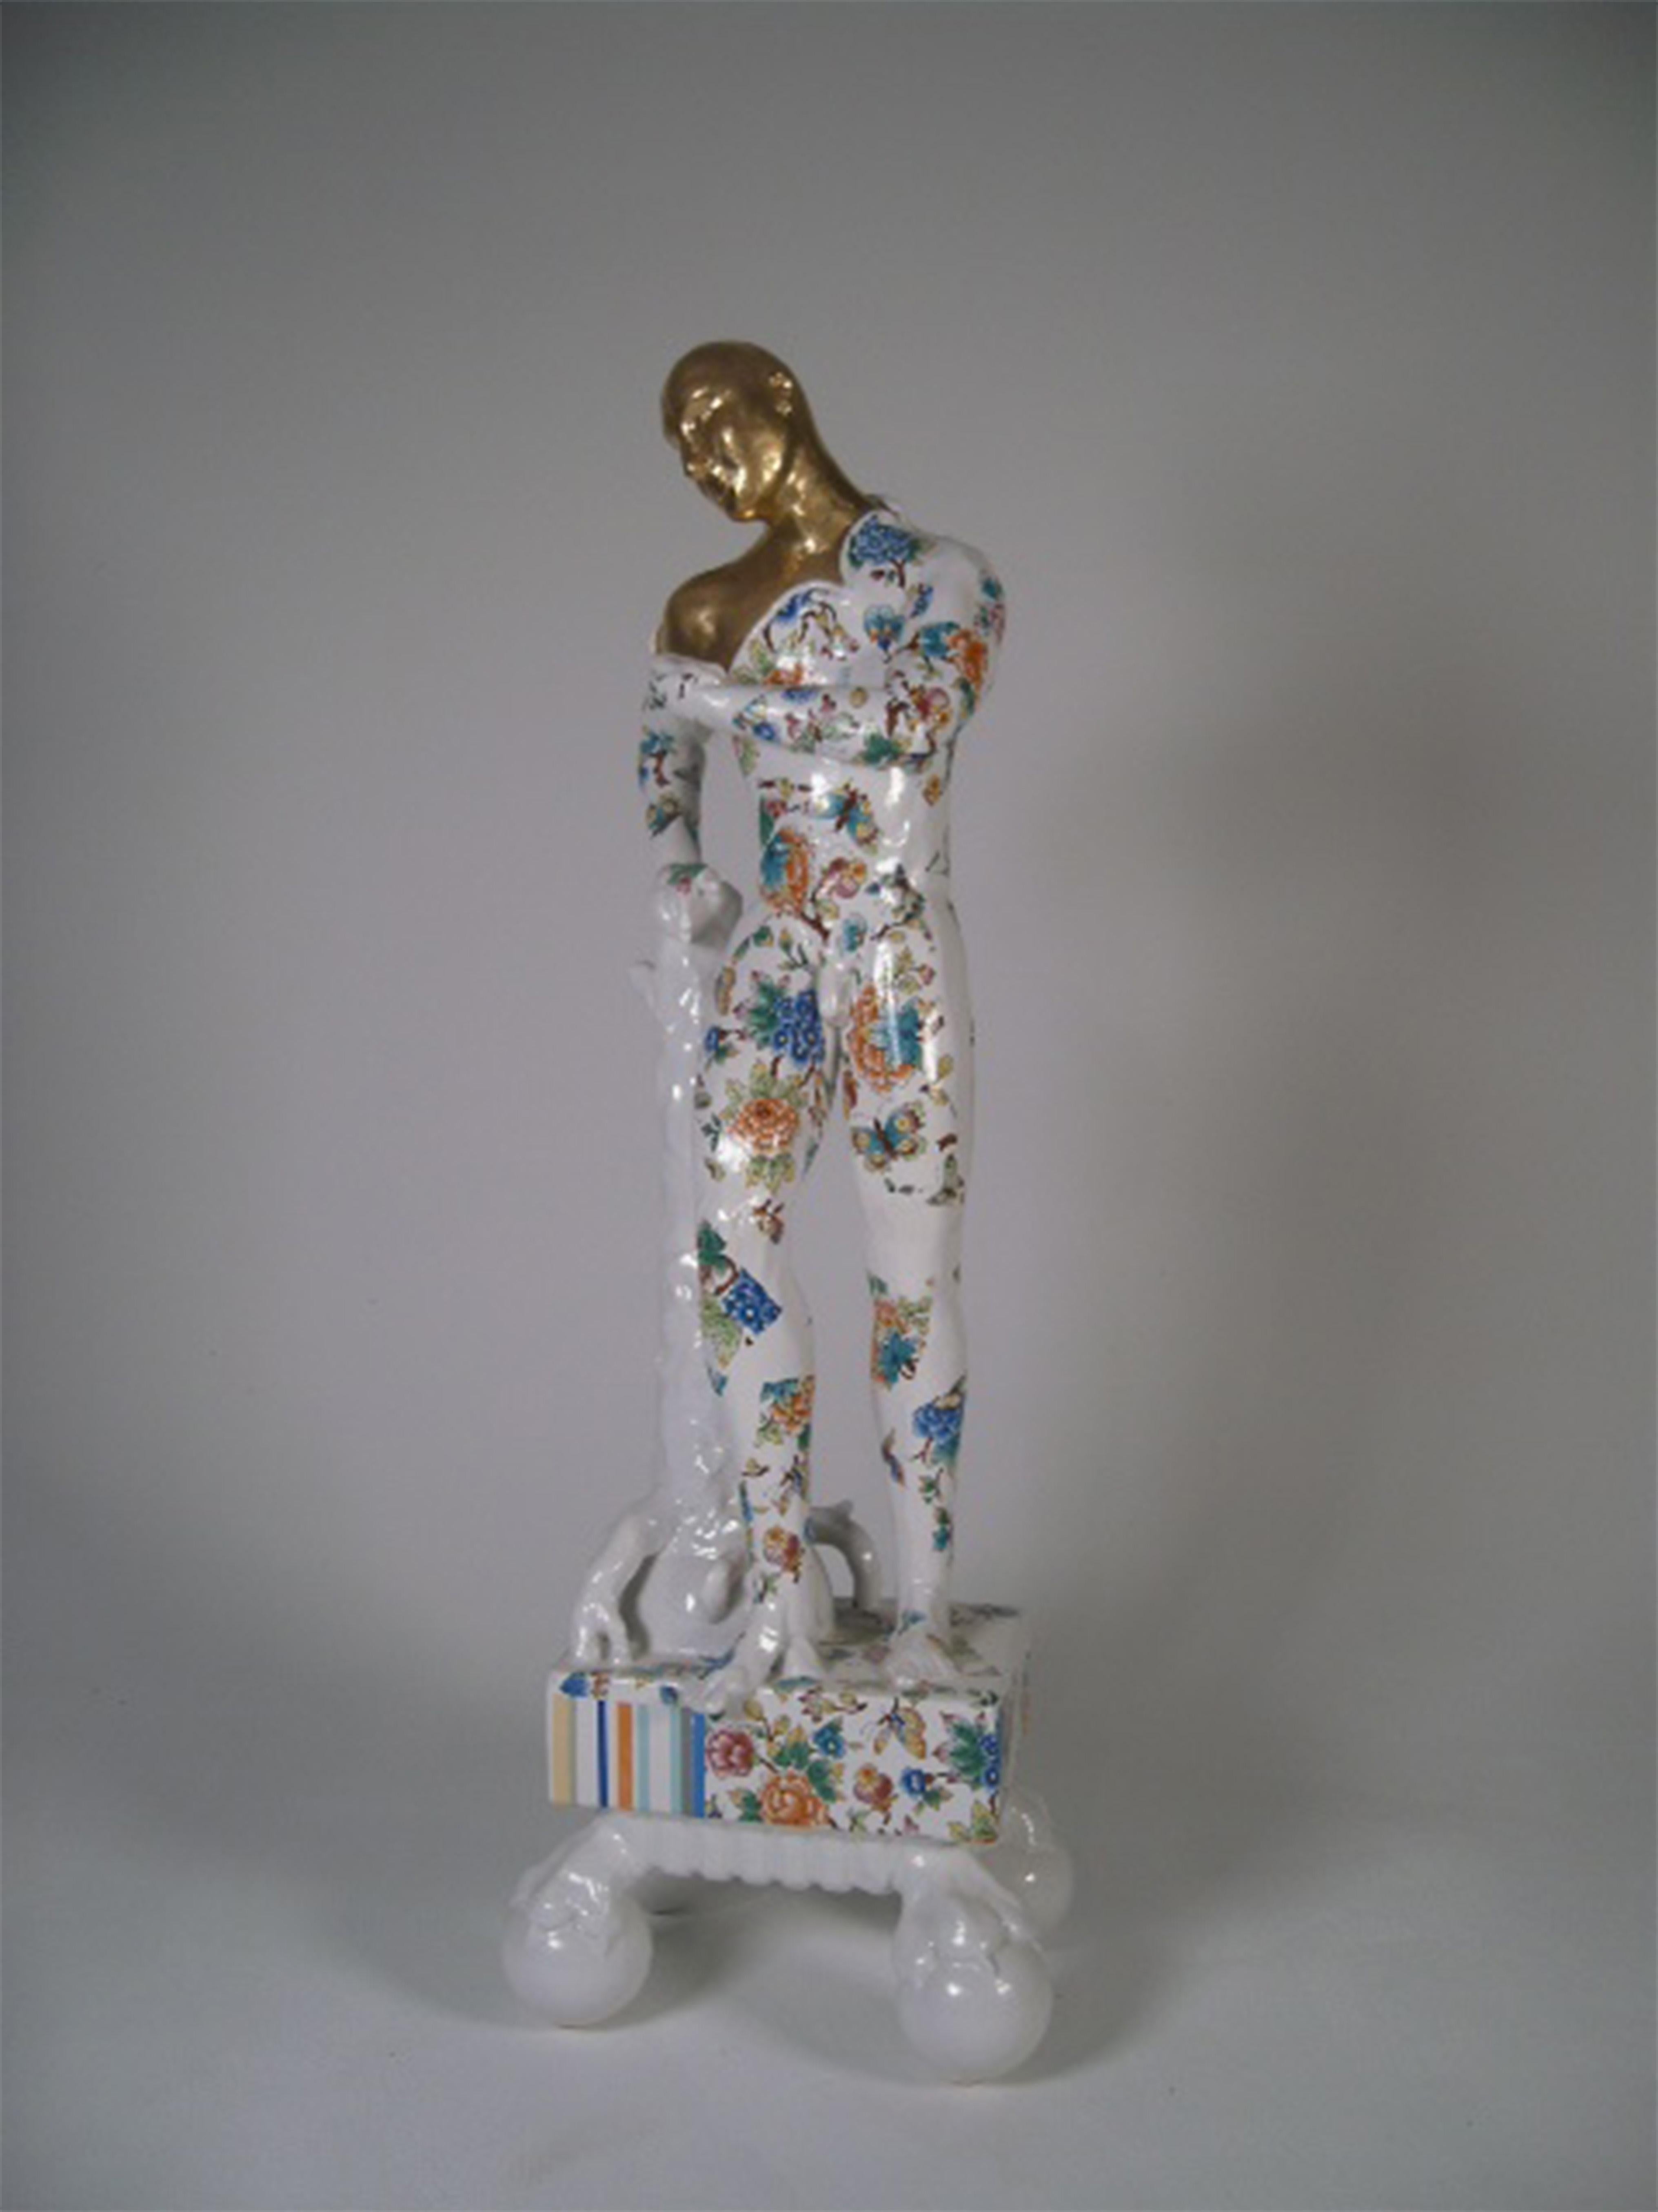 Pierre Williams Figurative Sculpture – Stehender männlicher Akt auf einem Sockel mit Krallen - zeitgenössische Keramikskulptur